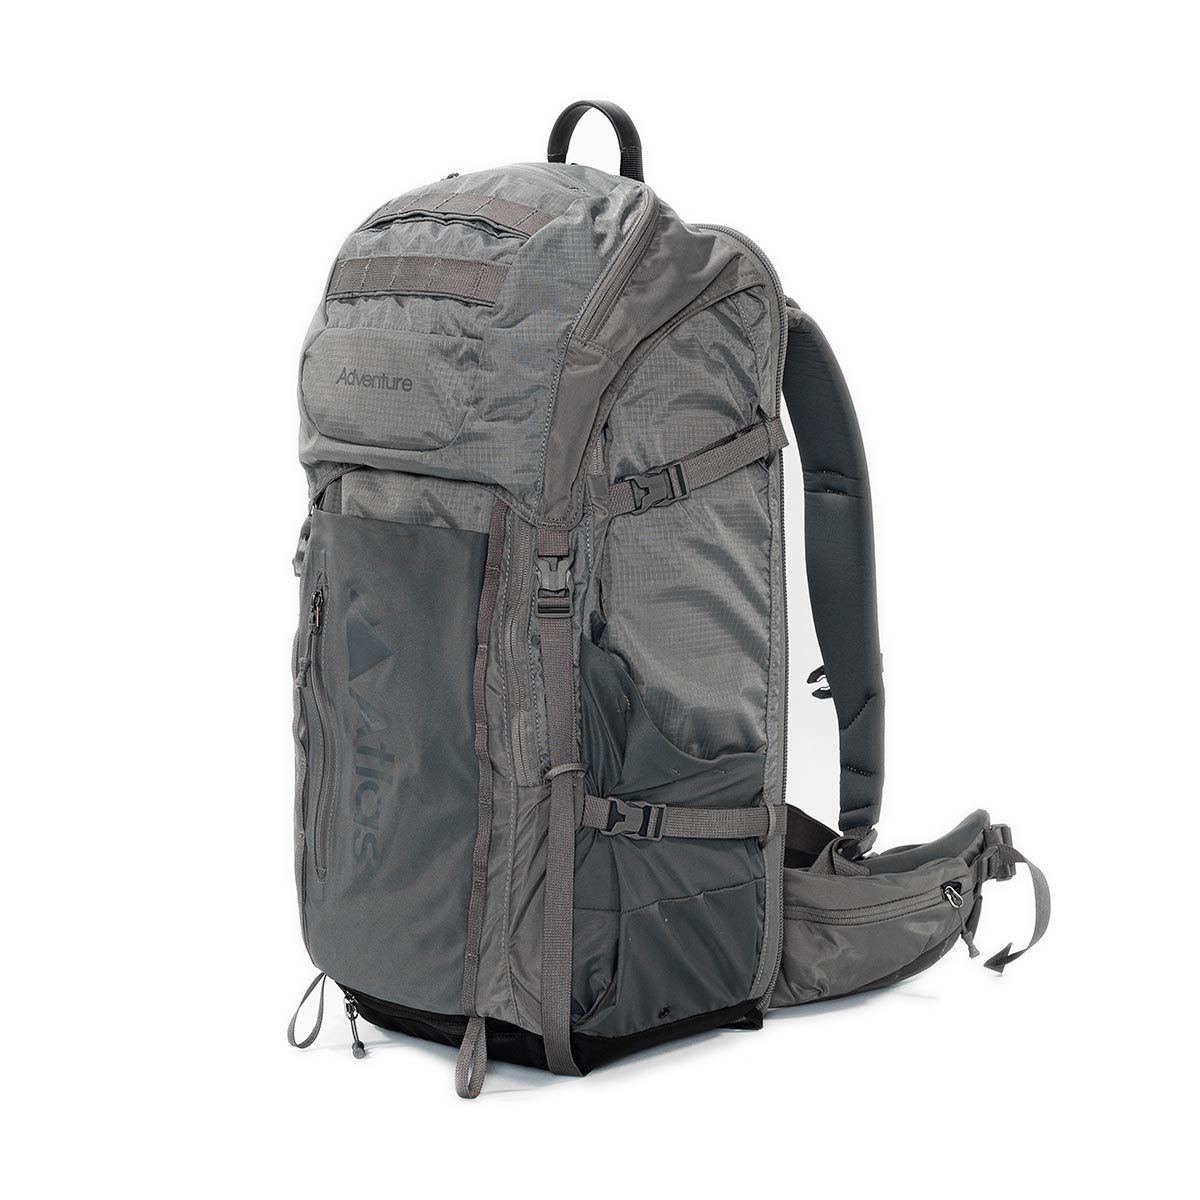 Atlas Adventure Medium Backpack (Gray)